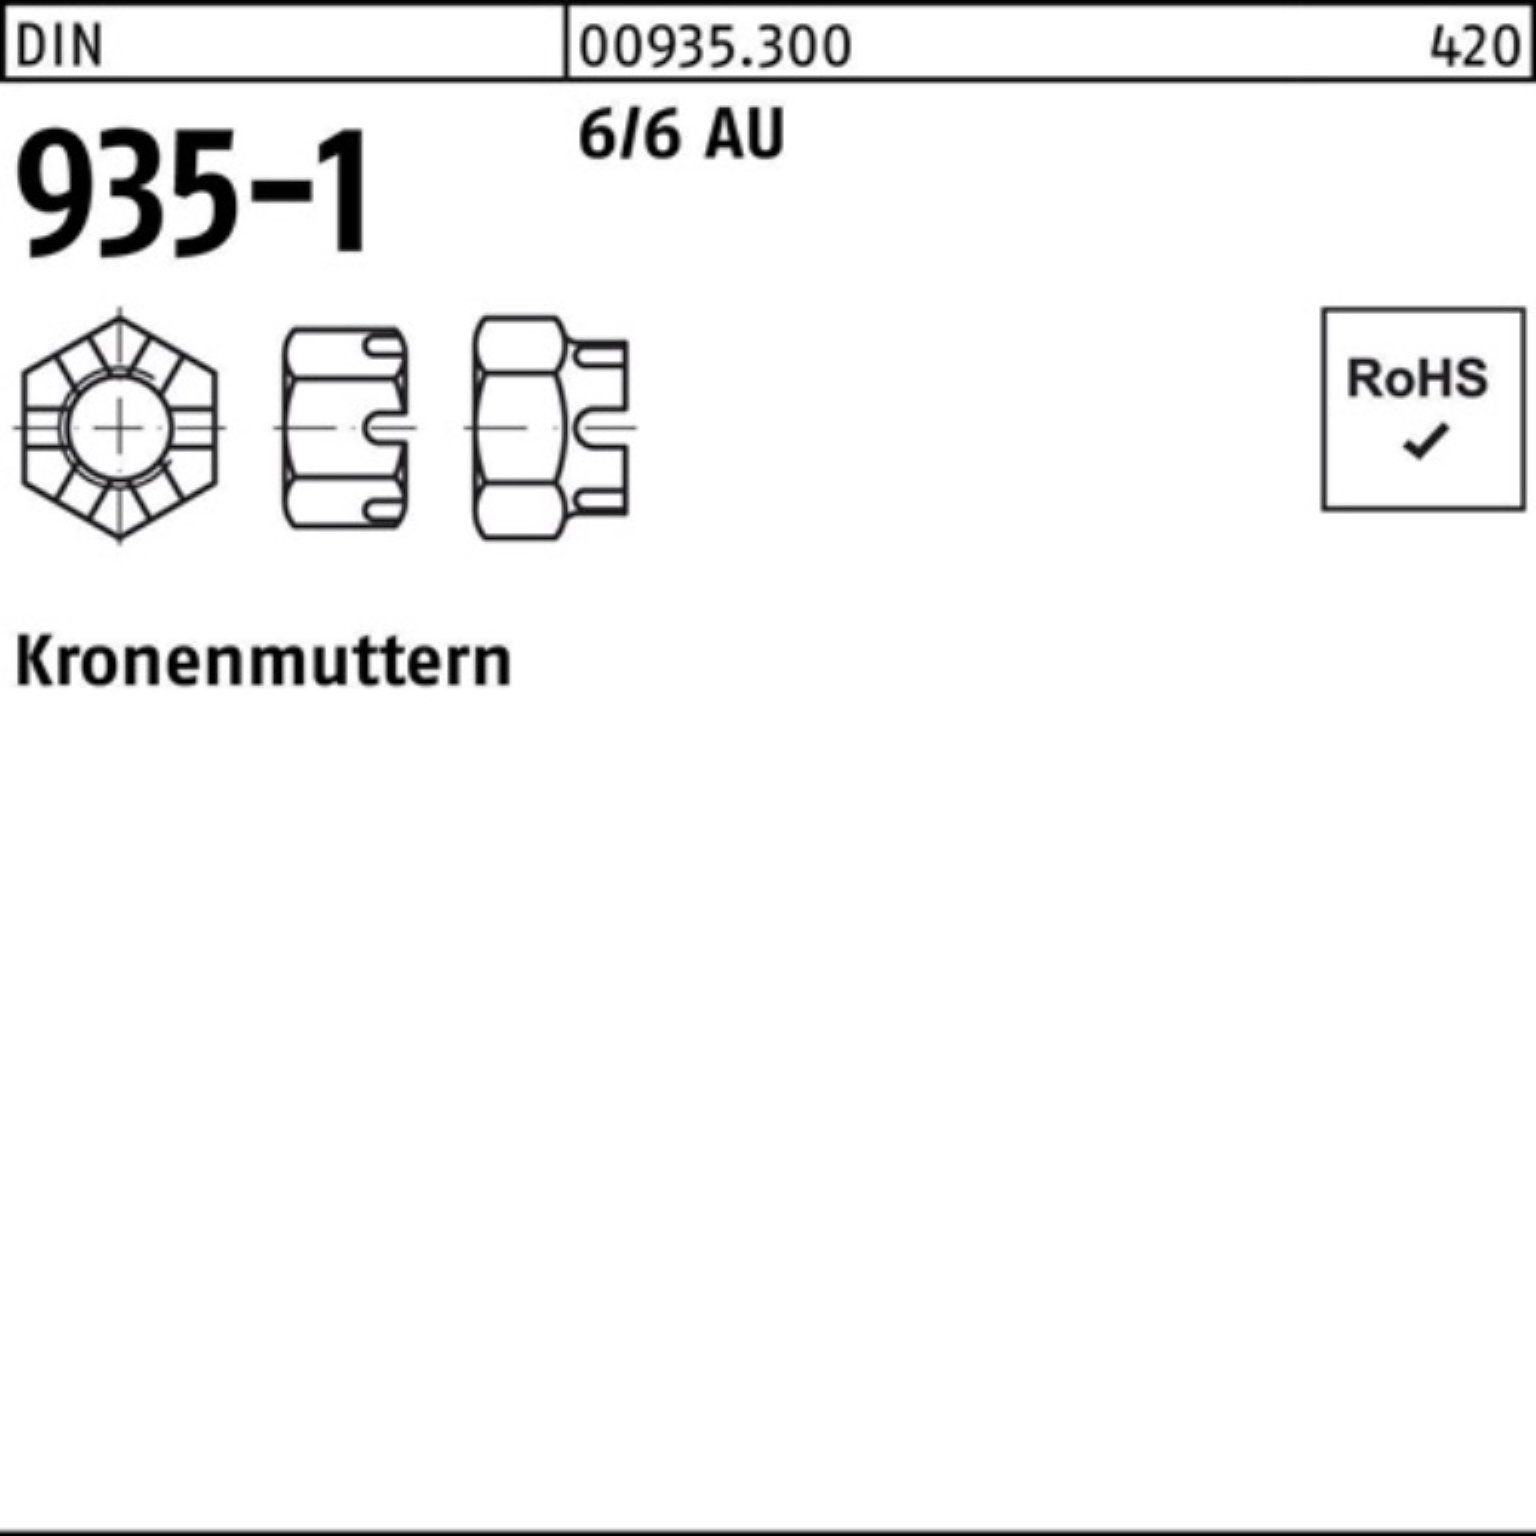 M5 Automatenstahl DIN Kronenmutter Reyher 100 Kronenmutter 6/6 Pack DIN Stück 935-1 100er